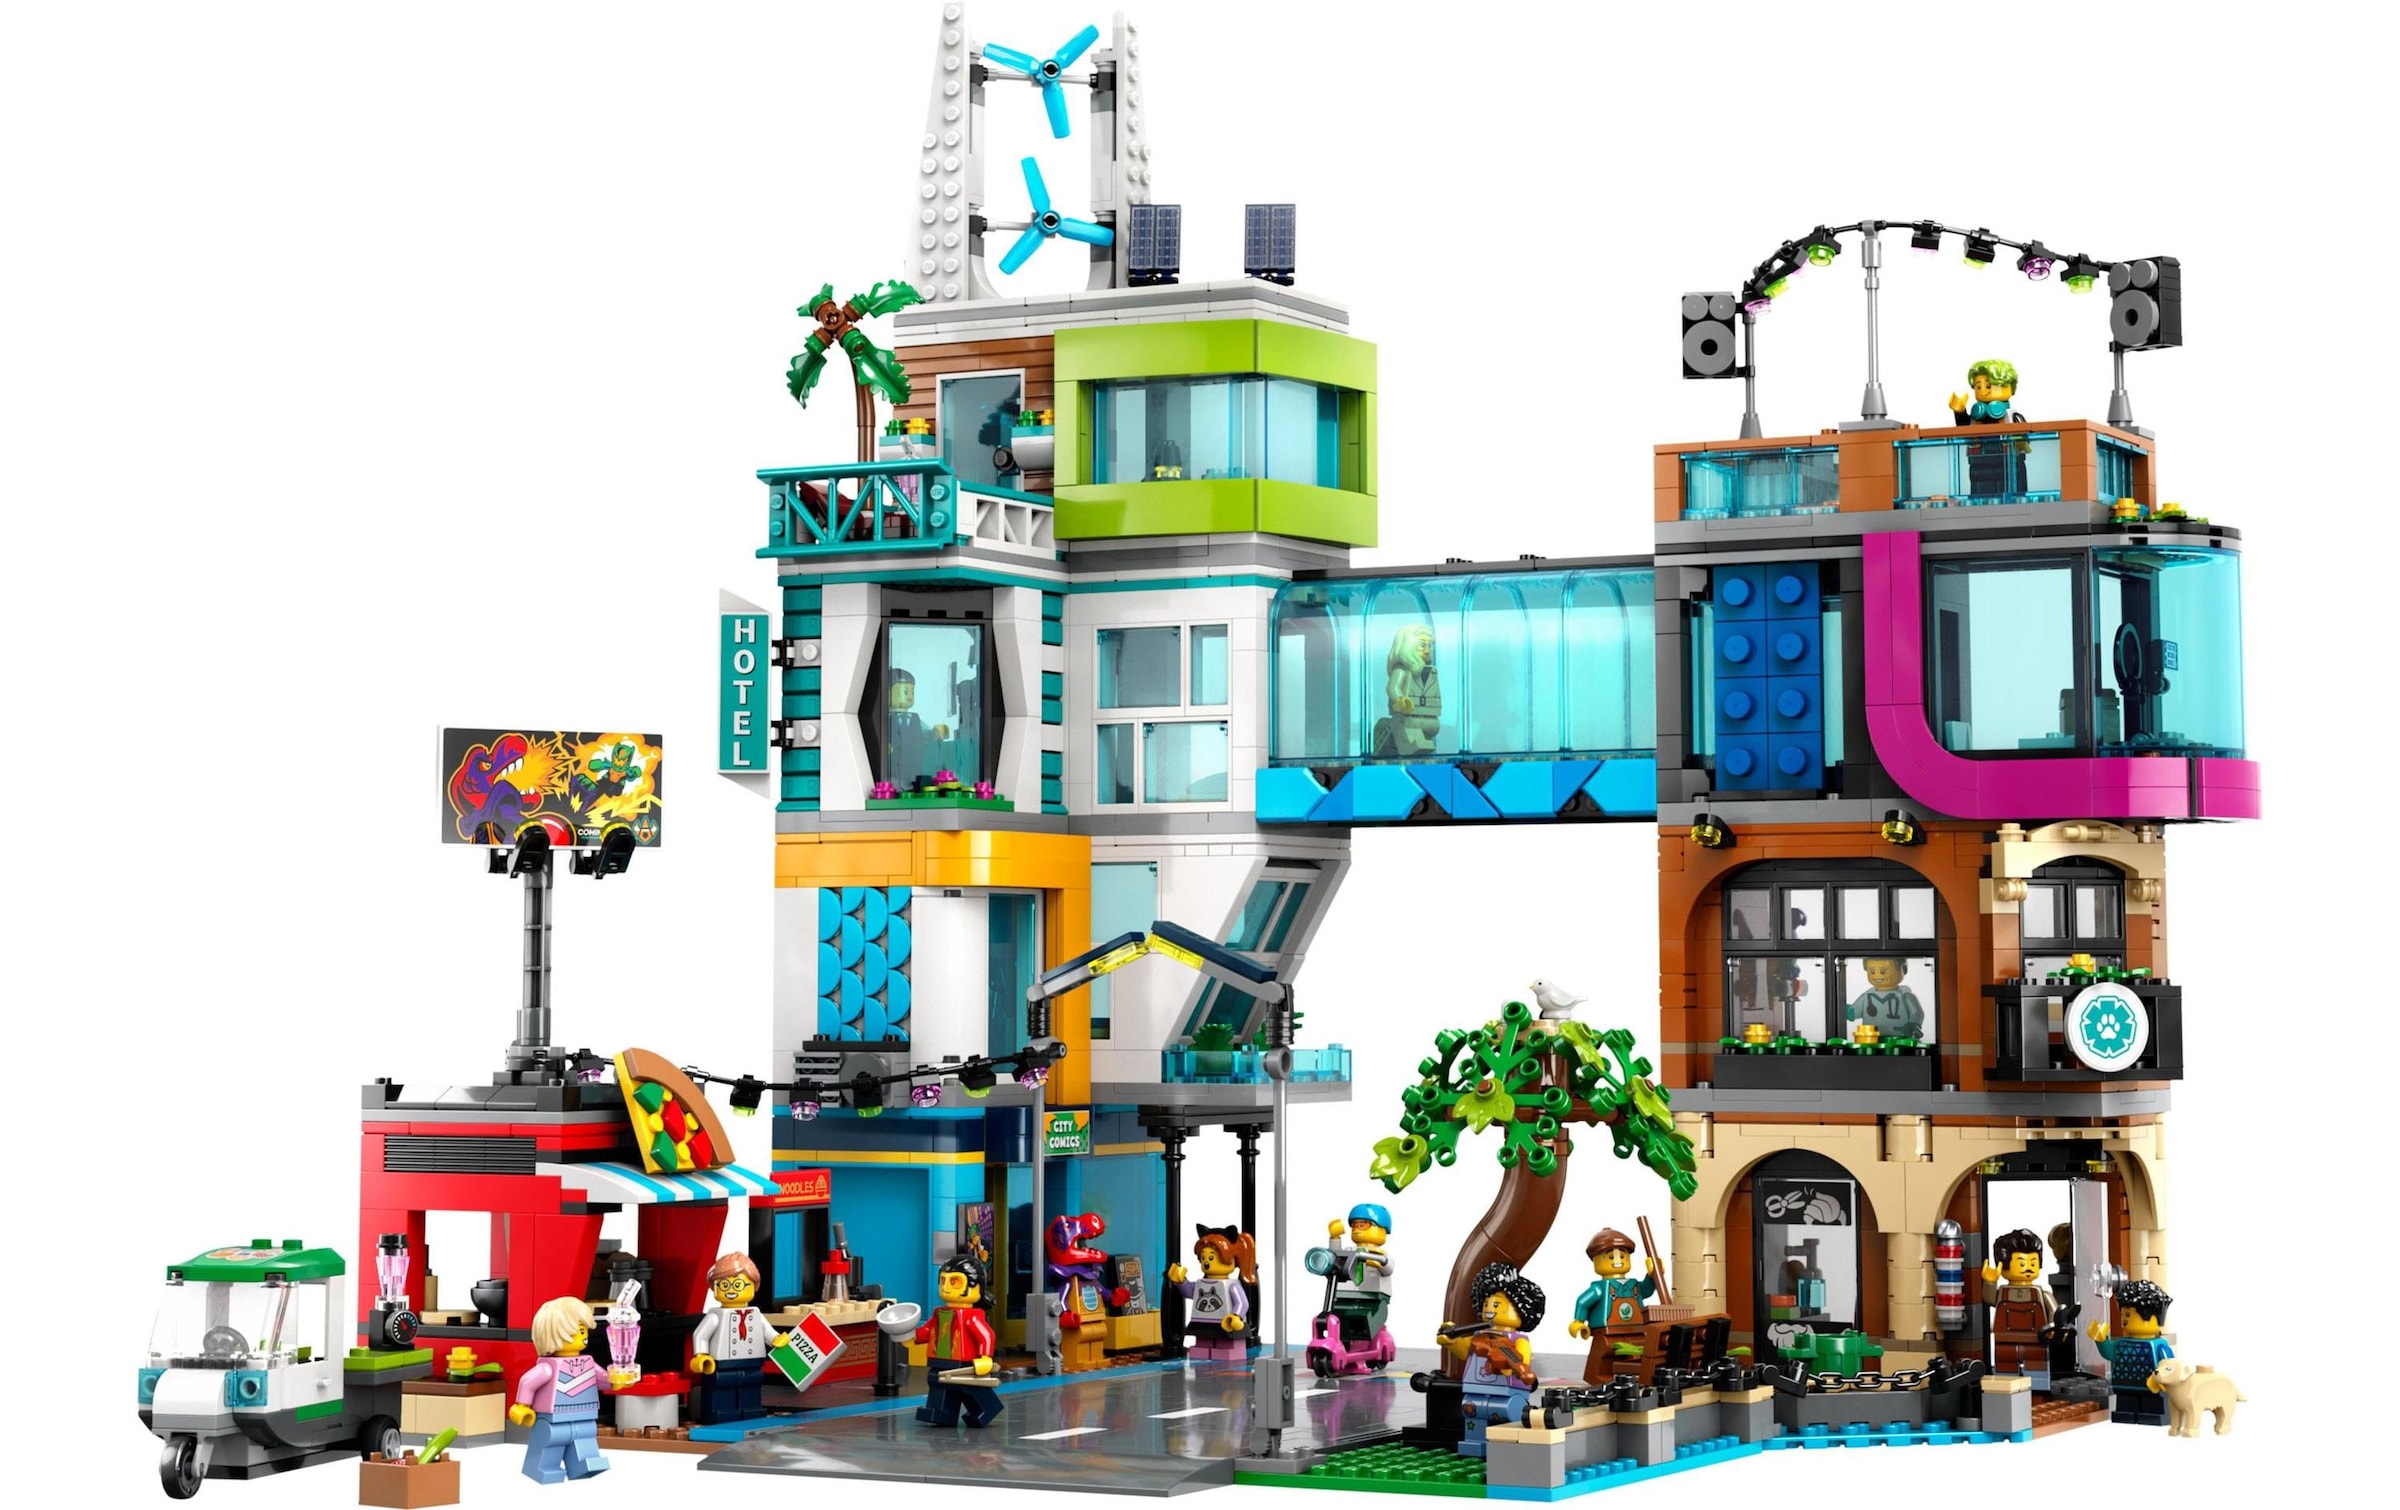 LEGO® Spielbausteine »City Stadtzentrum 60380«, (2010 St.)